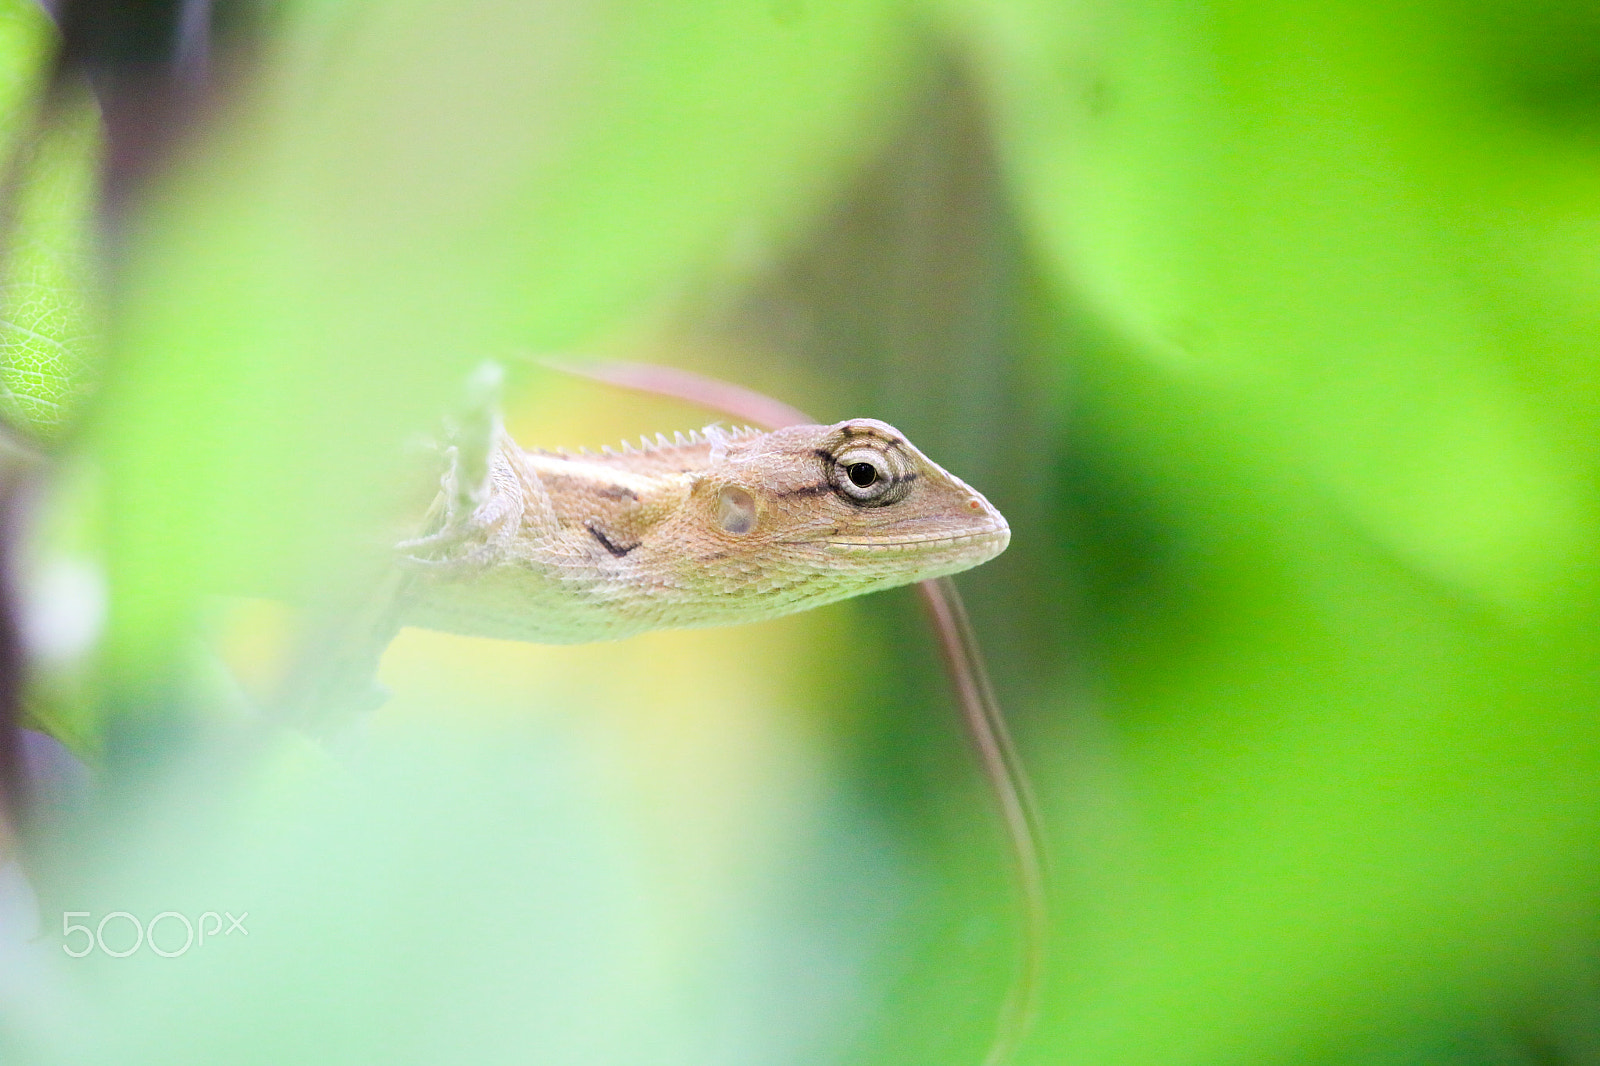 Canon EOS 70D sample photo. Garden lizard & butterfly photography